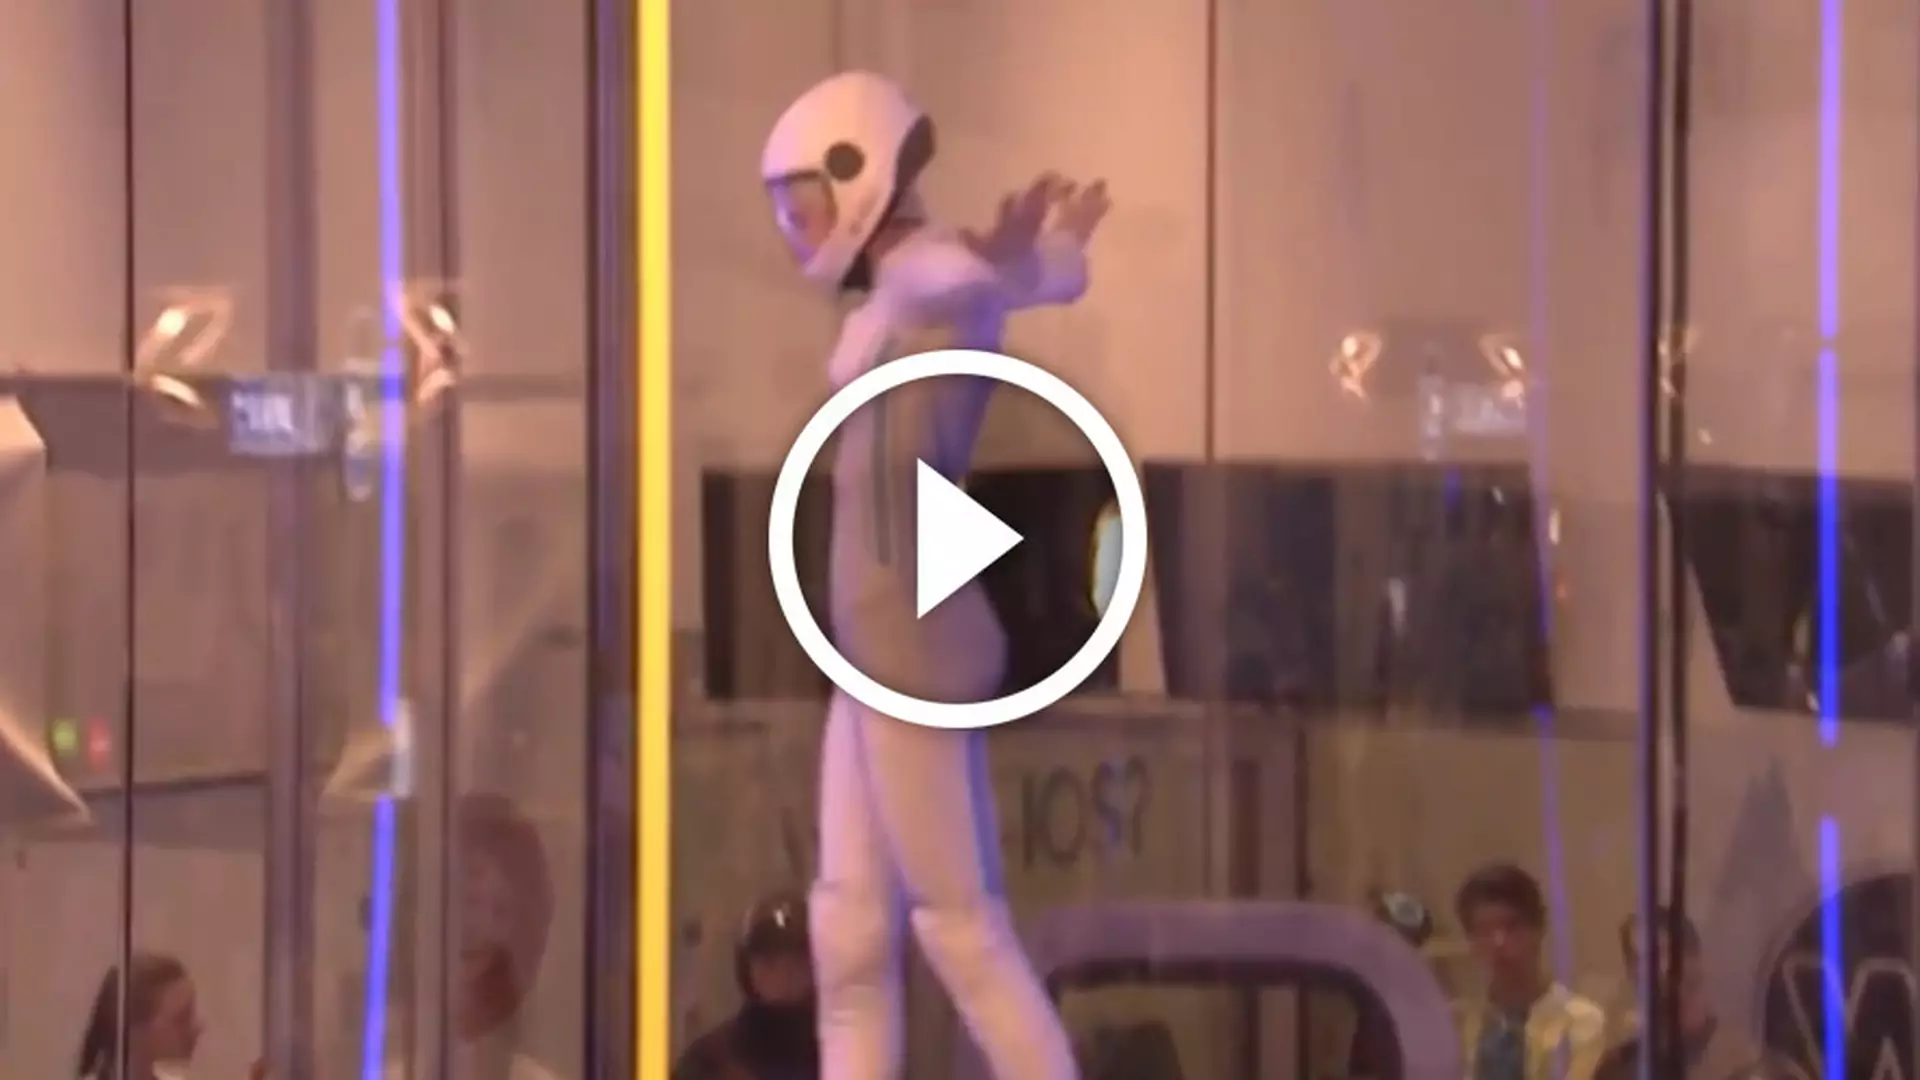 Zachwycający taniec w tunelu aerodynamicznym w wykonaniu 16-letniej Polki. Musicie to zobaczyć!